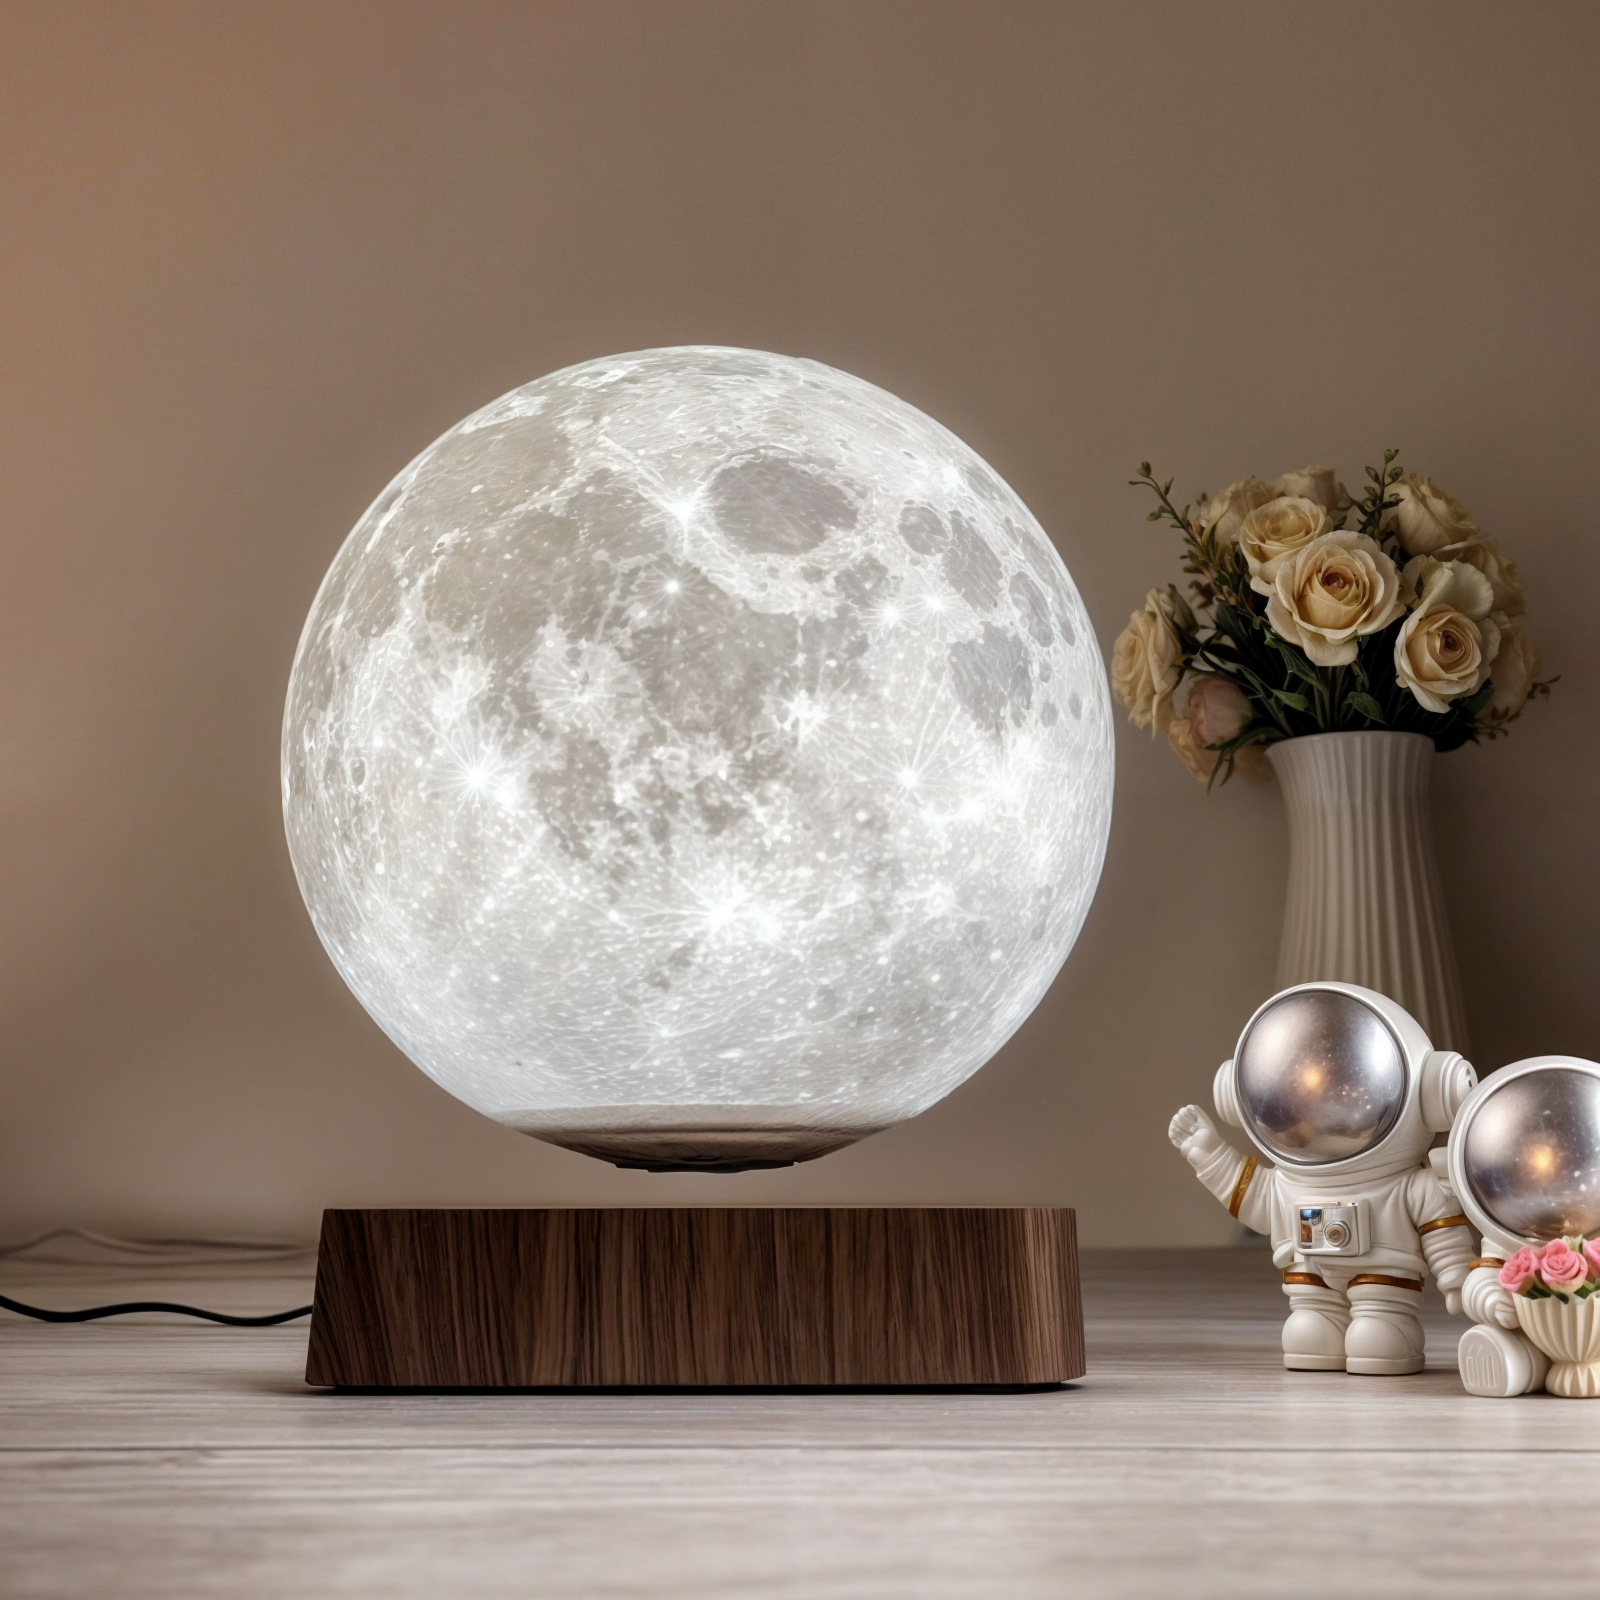 Schwebende Mondlampe – 3D Gedrucktes LED Nachtlicht, Touch & Fernbedienung, Warmweiß/Weiß/Gelb, Magnetische Levitation, Holz Basis, EU/US/UK/AU Stecker